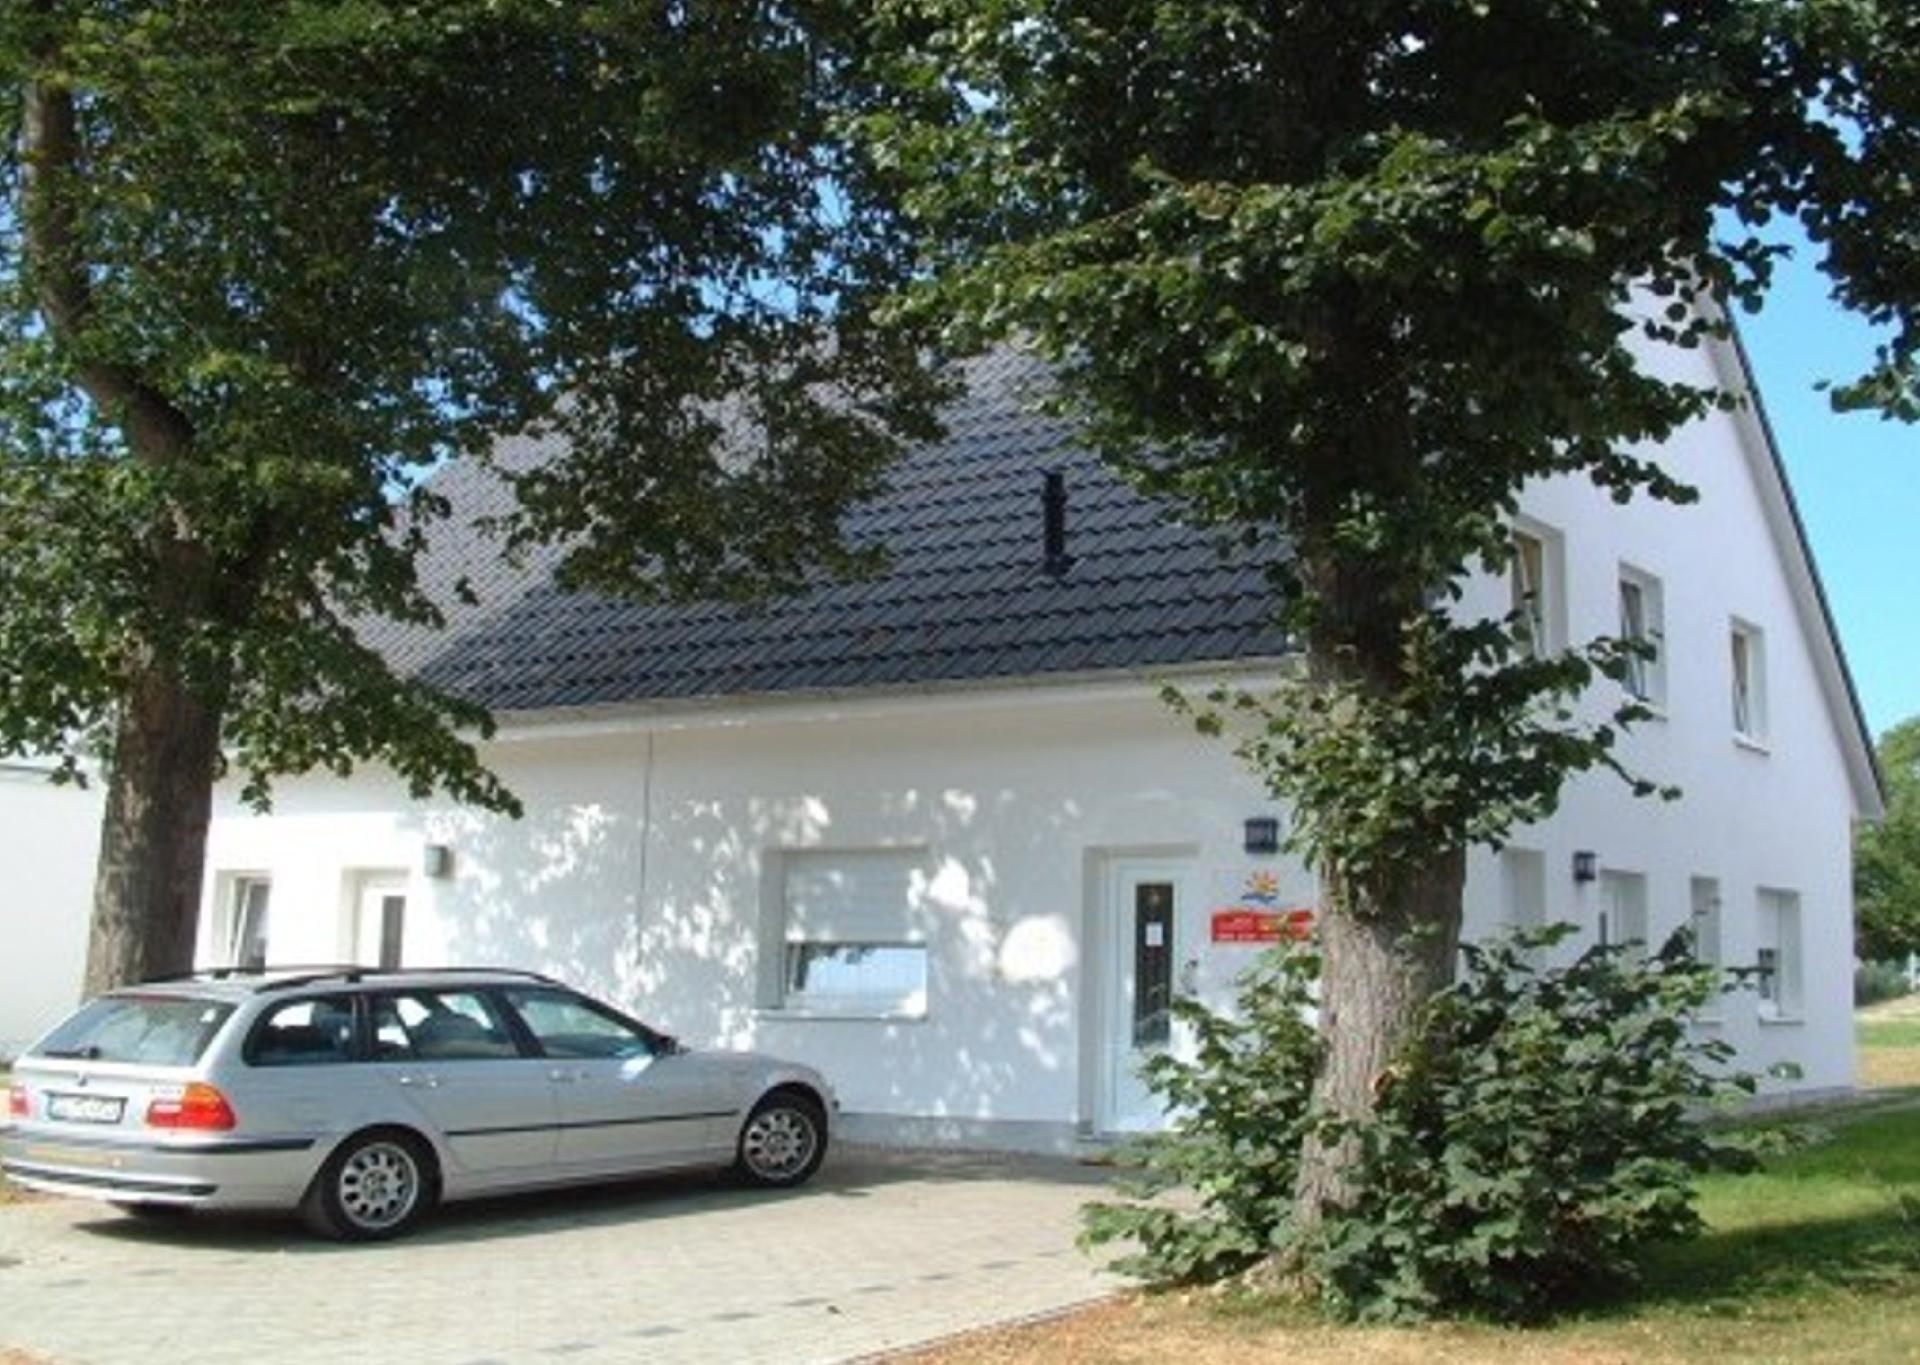 Ferienhaus in Glowe mit Garten und Terrasse Ferienhaus in Mecklenburg Vorpommern